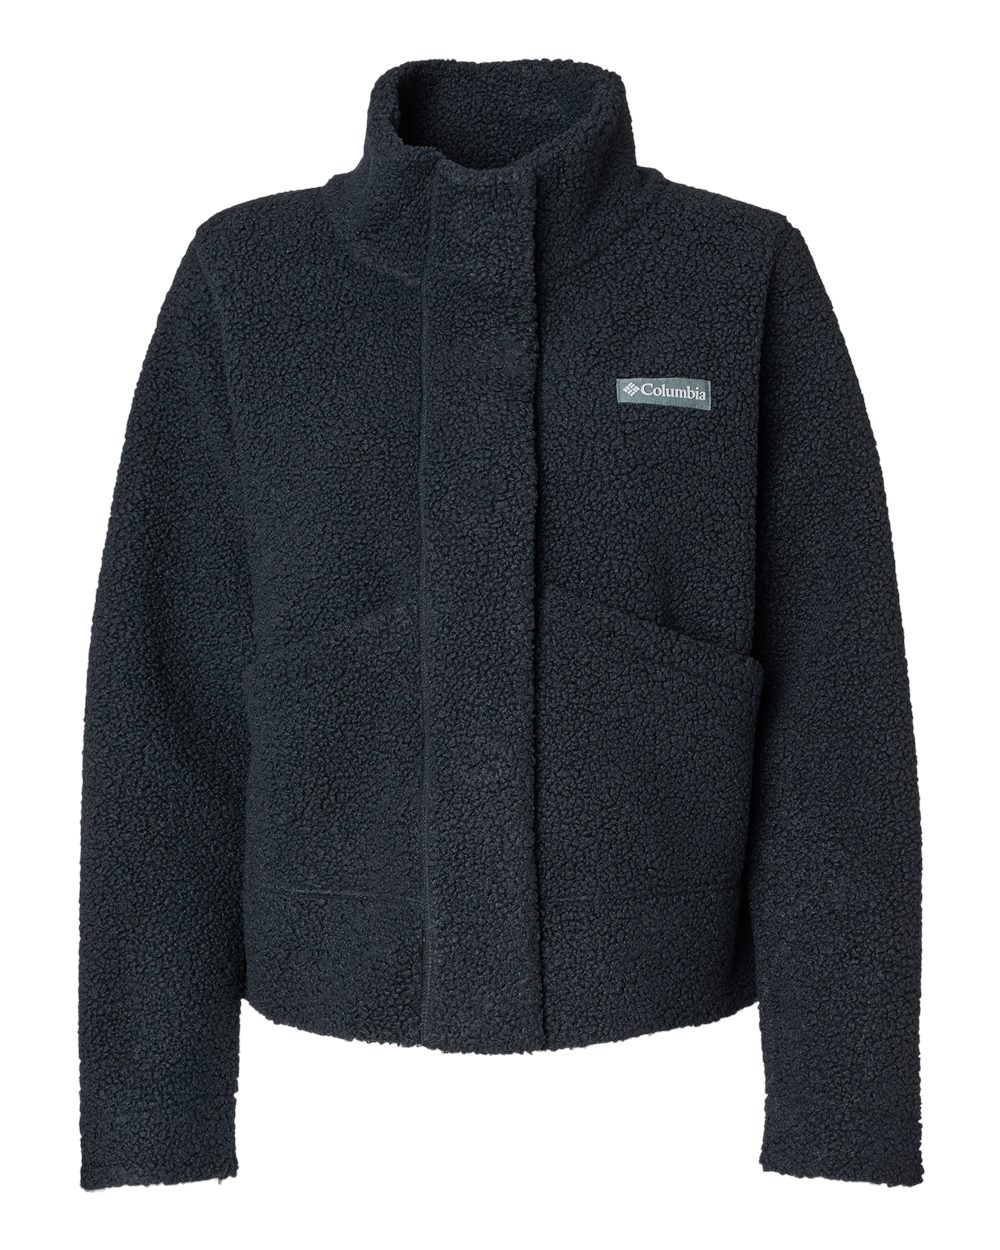 Columbia 201265 - Women's Panorama™ Snap Fleece Jacket